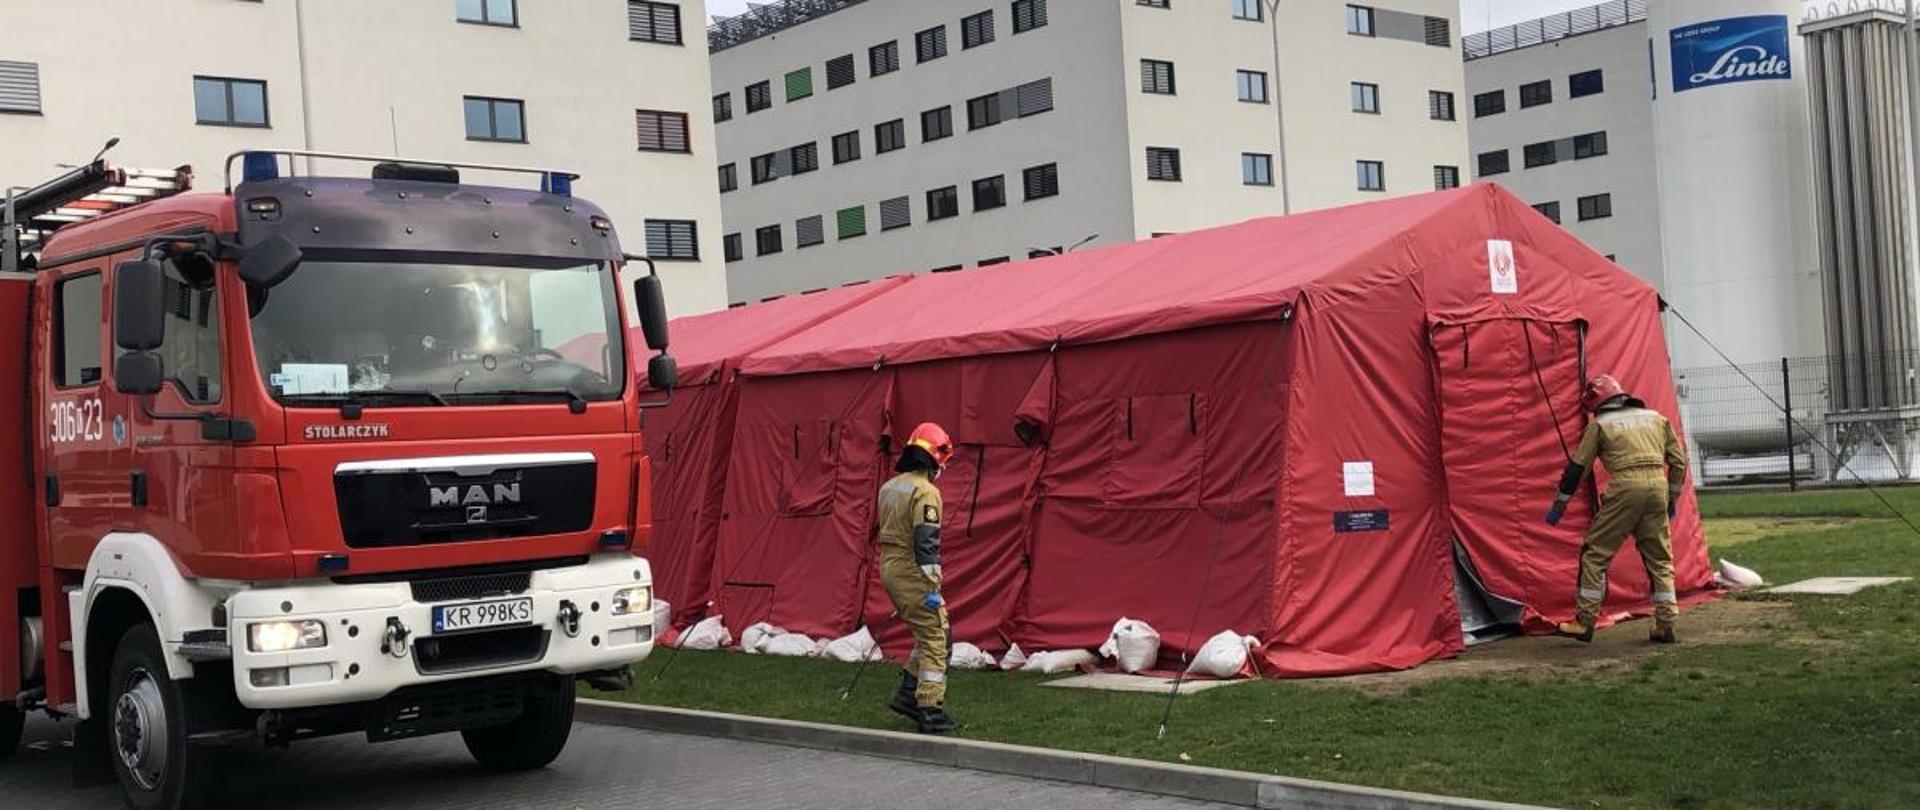 Po lewej stronie wóz strażacki, po prawej rozłożony czerwony duży namiot, w oddali budynki wielopiętrowe. Przed namiotem dwóch strażaków. 